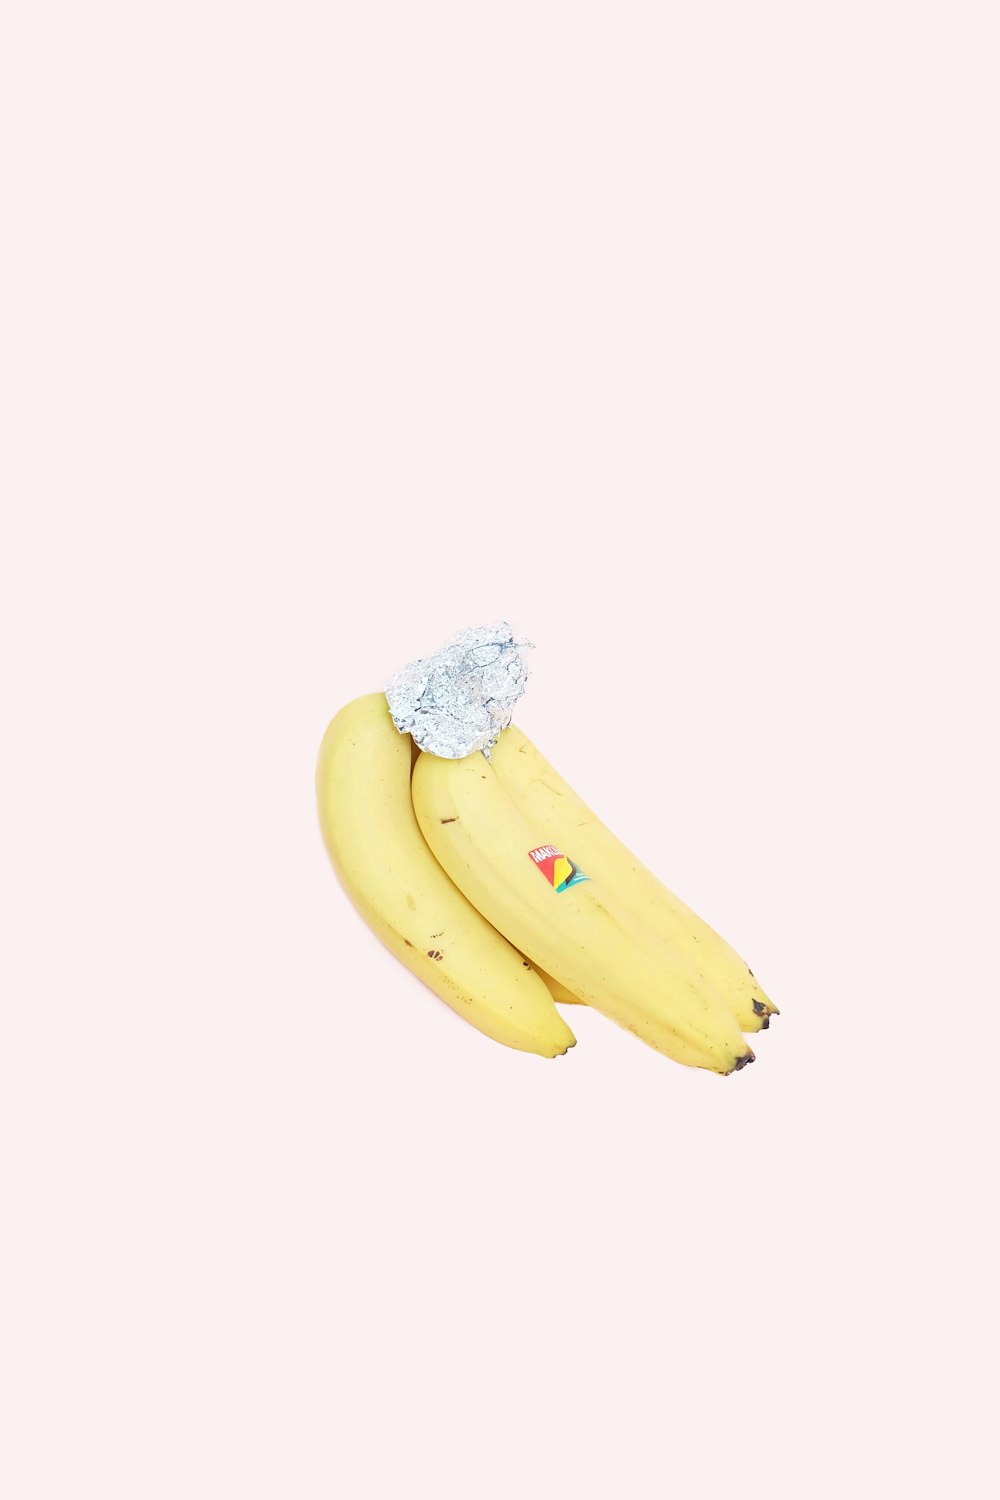 바나나 한 다발